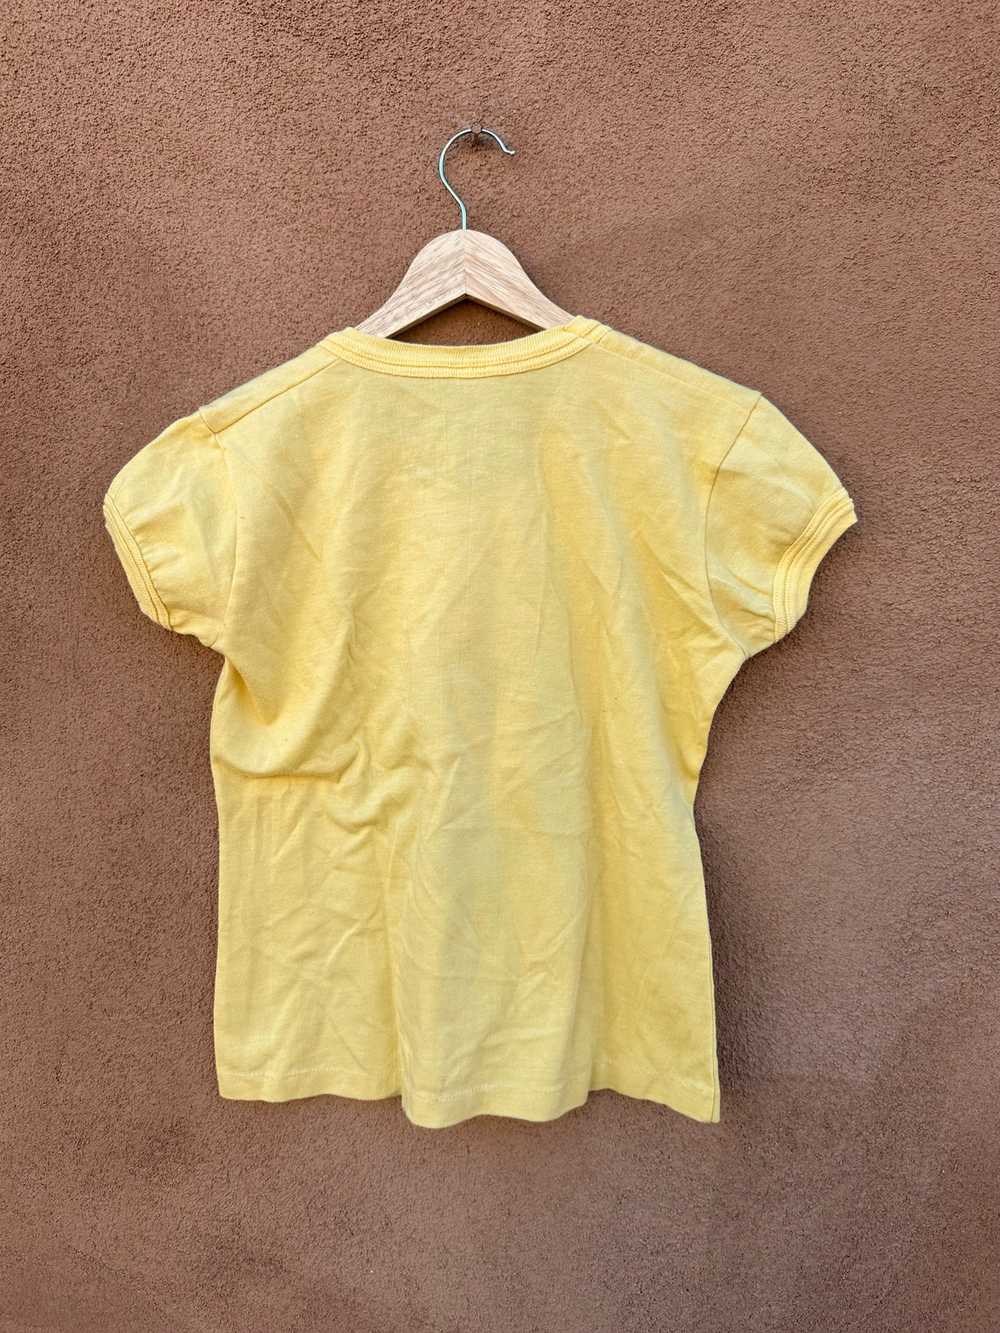 Yellow Nike Pinwheel Ringer T-shirt - 1970's - image 4